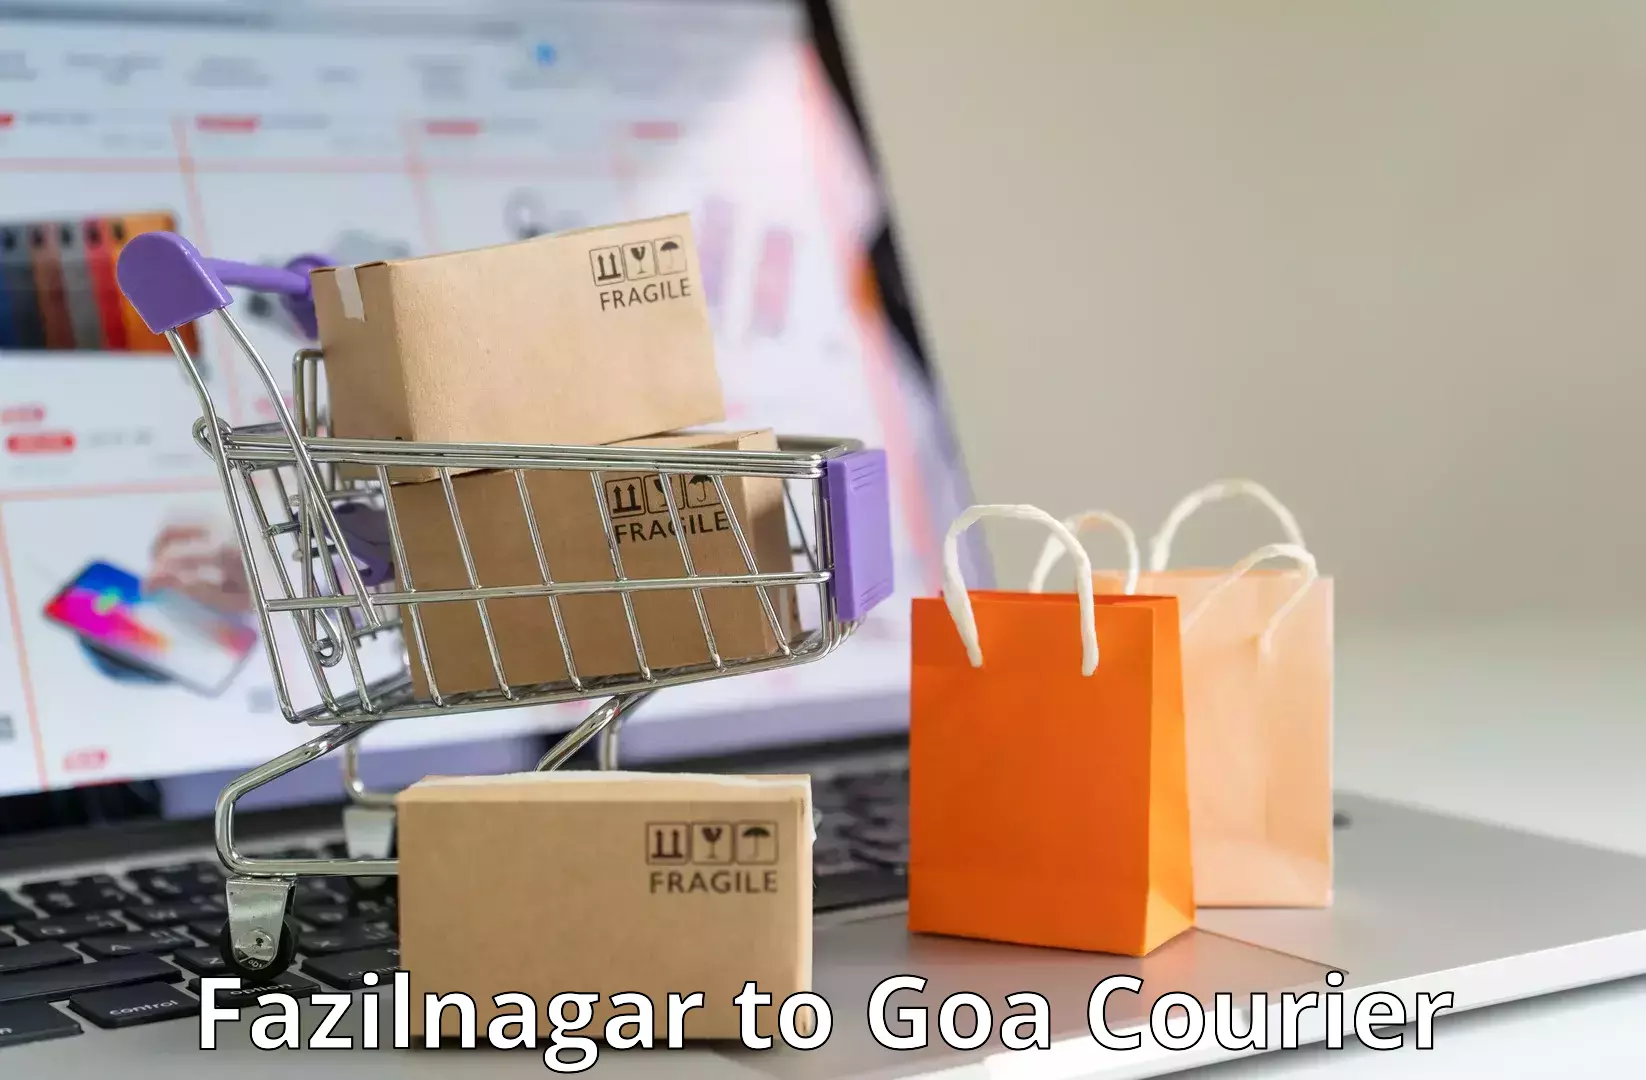 Quality courier partnerships Fazilnagar to IIT Goa